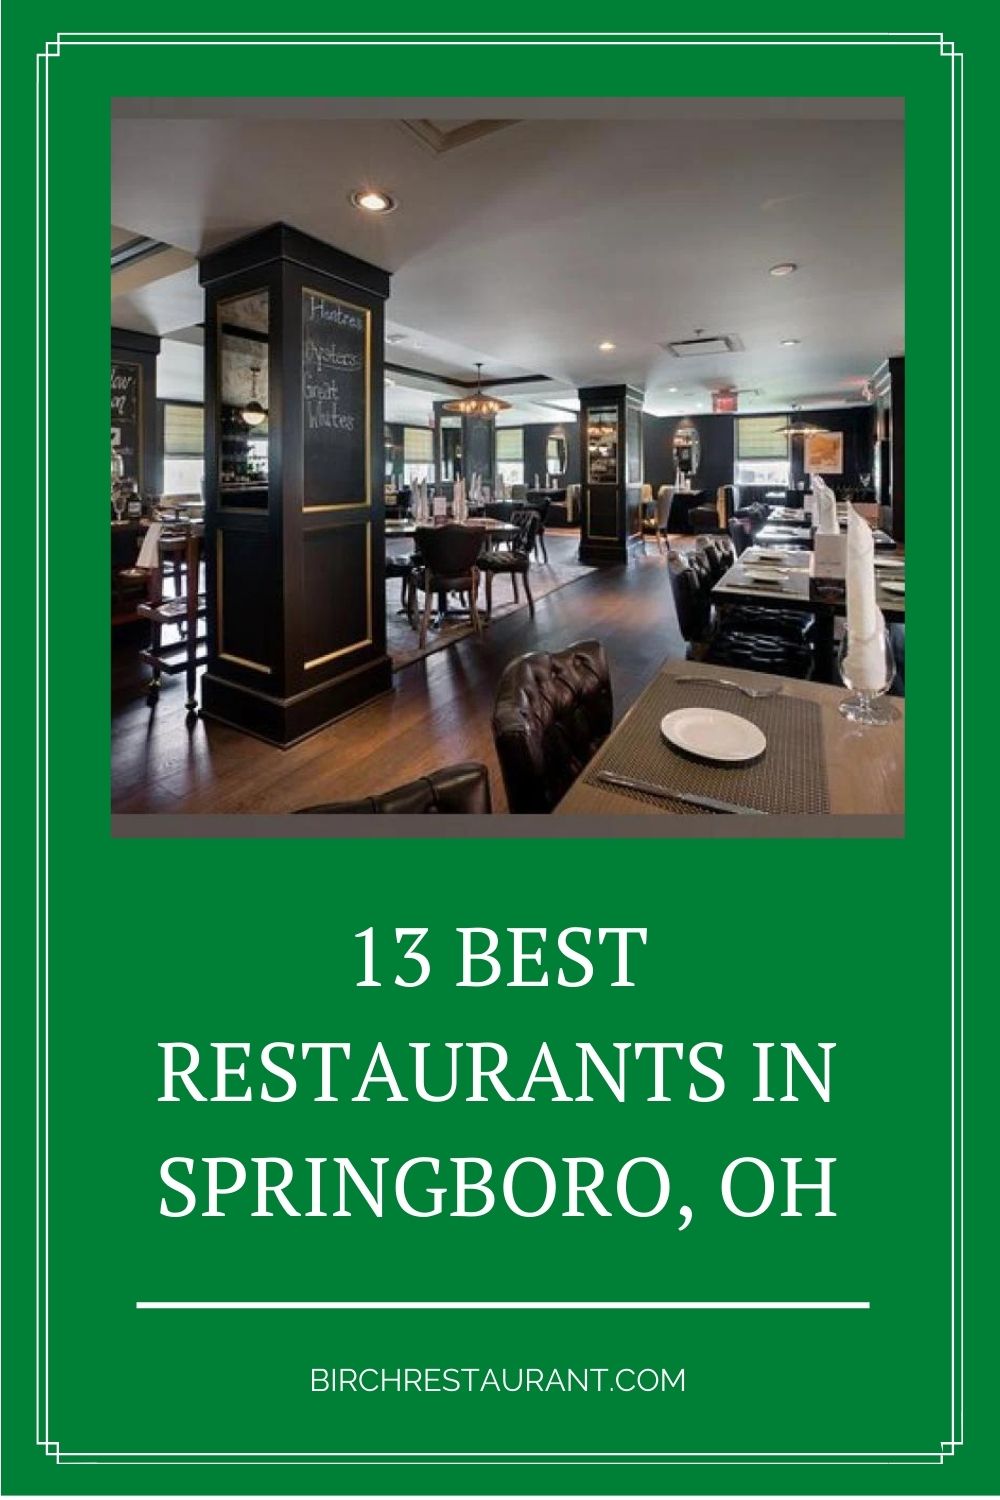 Best Restaurants in Springboro